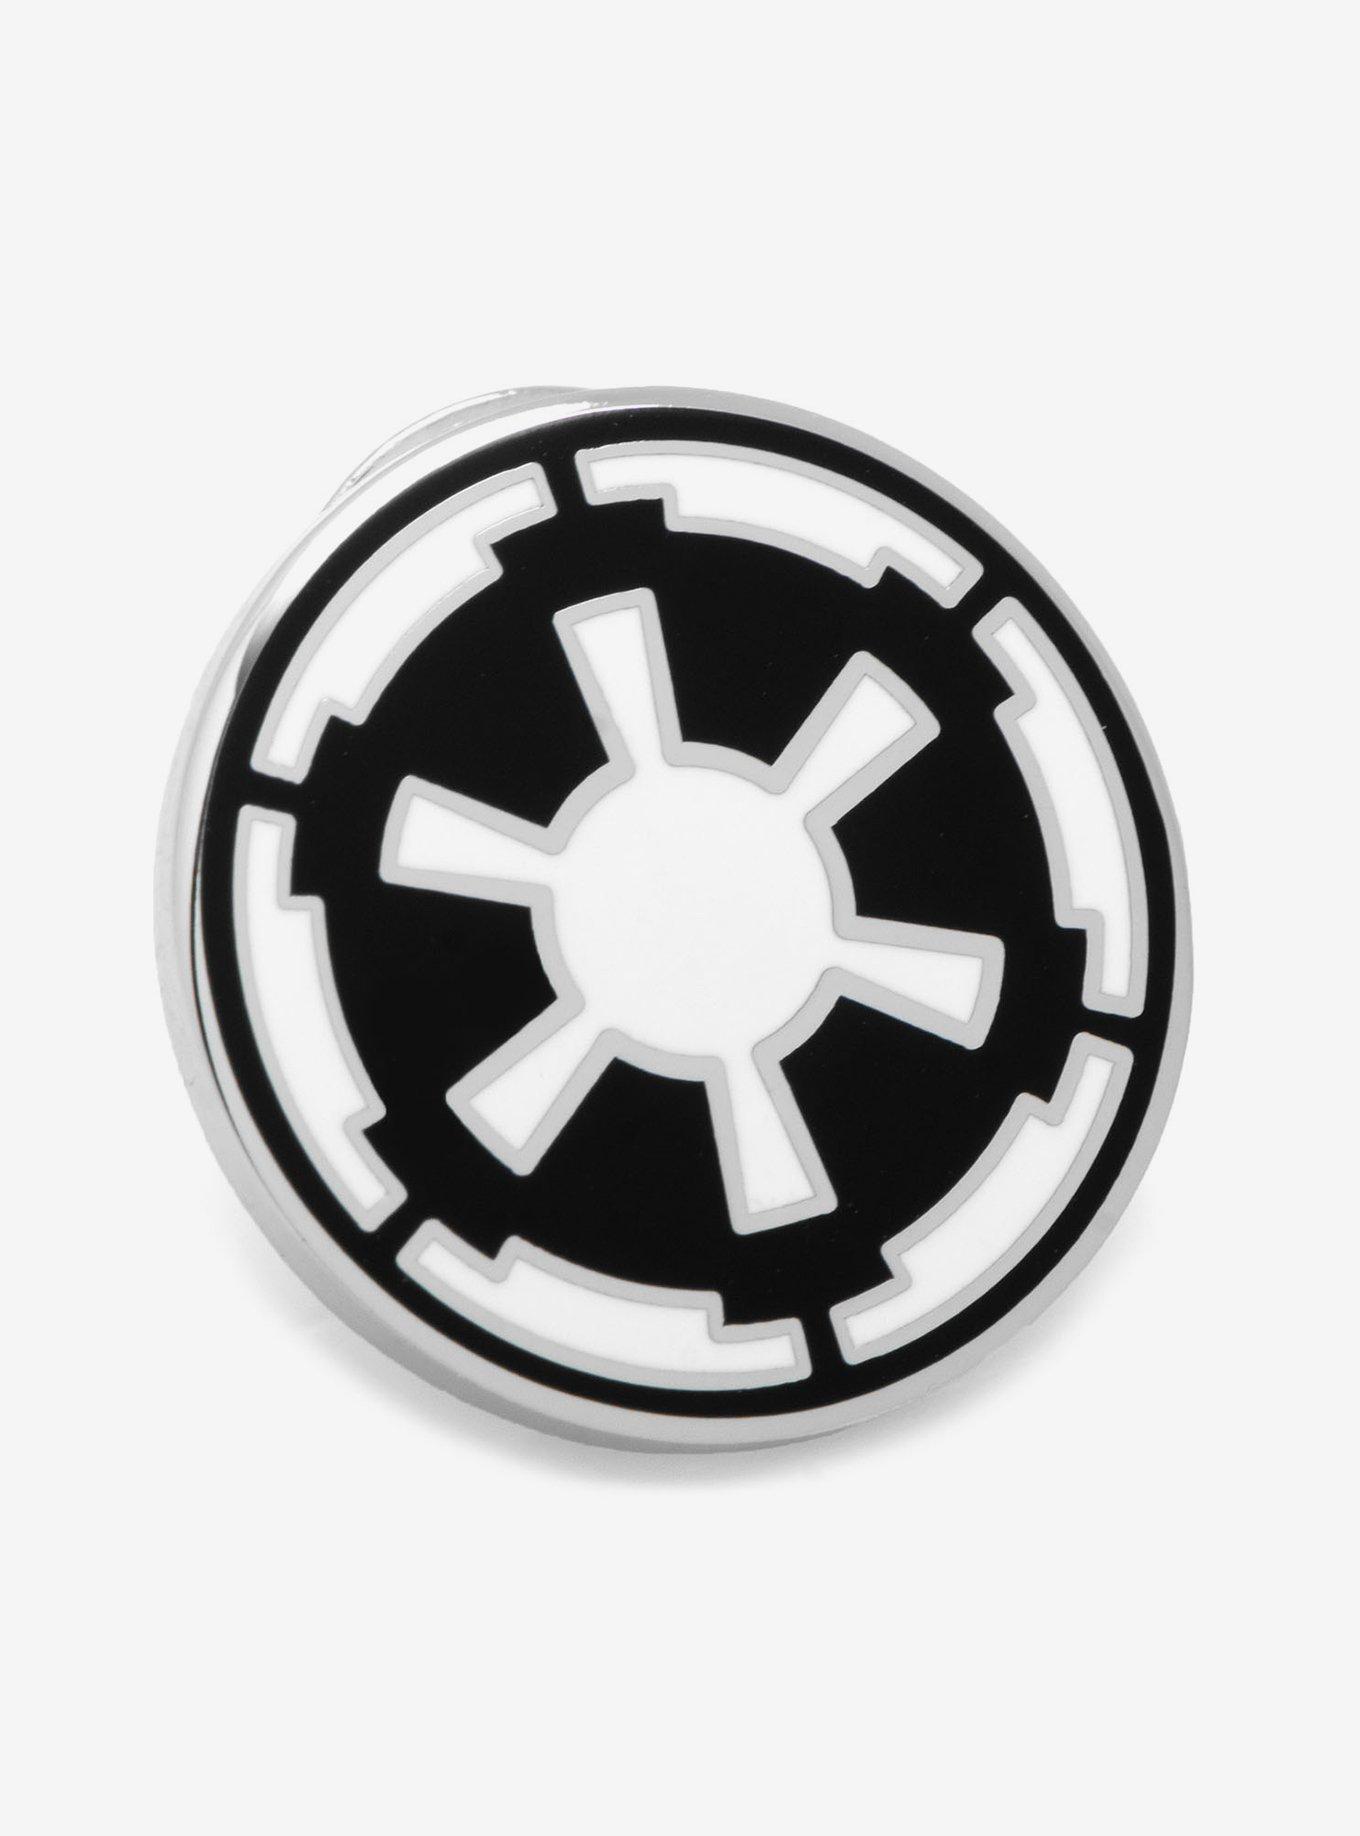 Star Wars Imperial Empire Lapel Pin, , hi-res